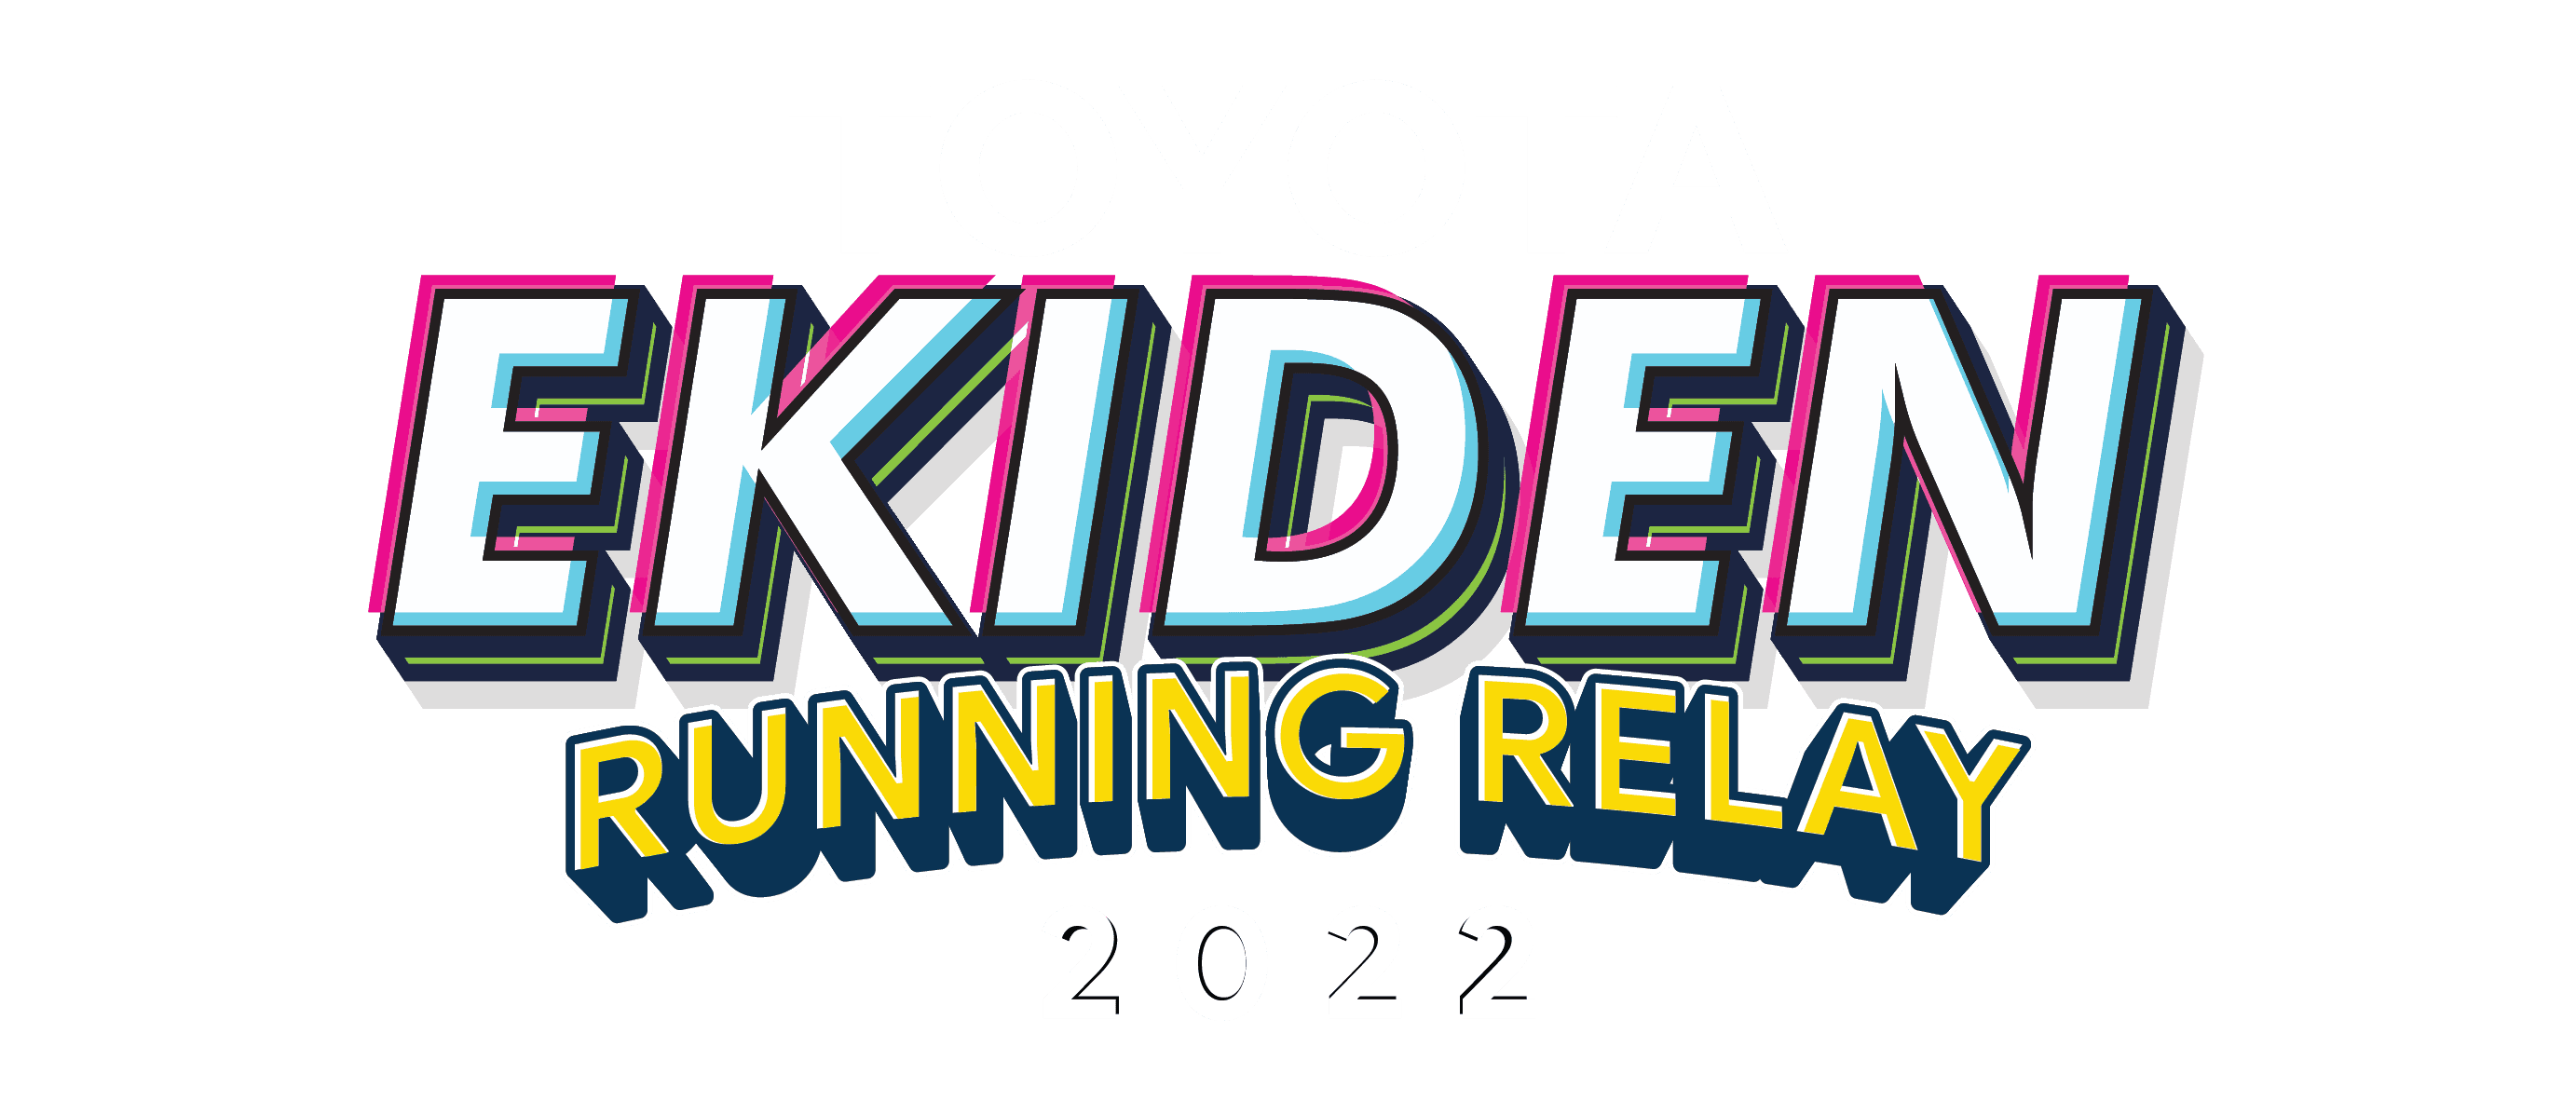 2022 Toyota Ekiden